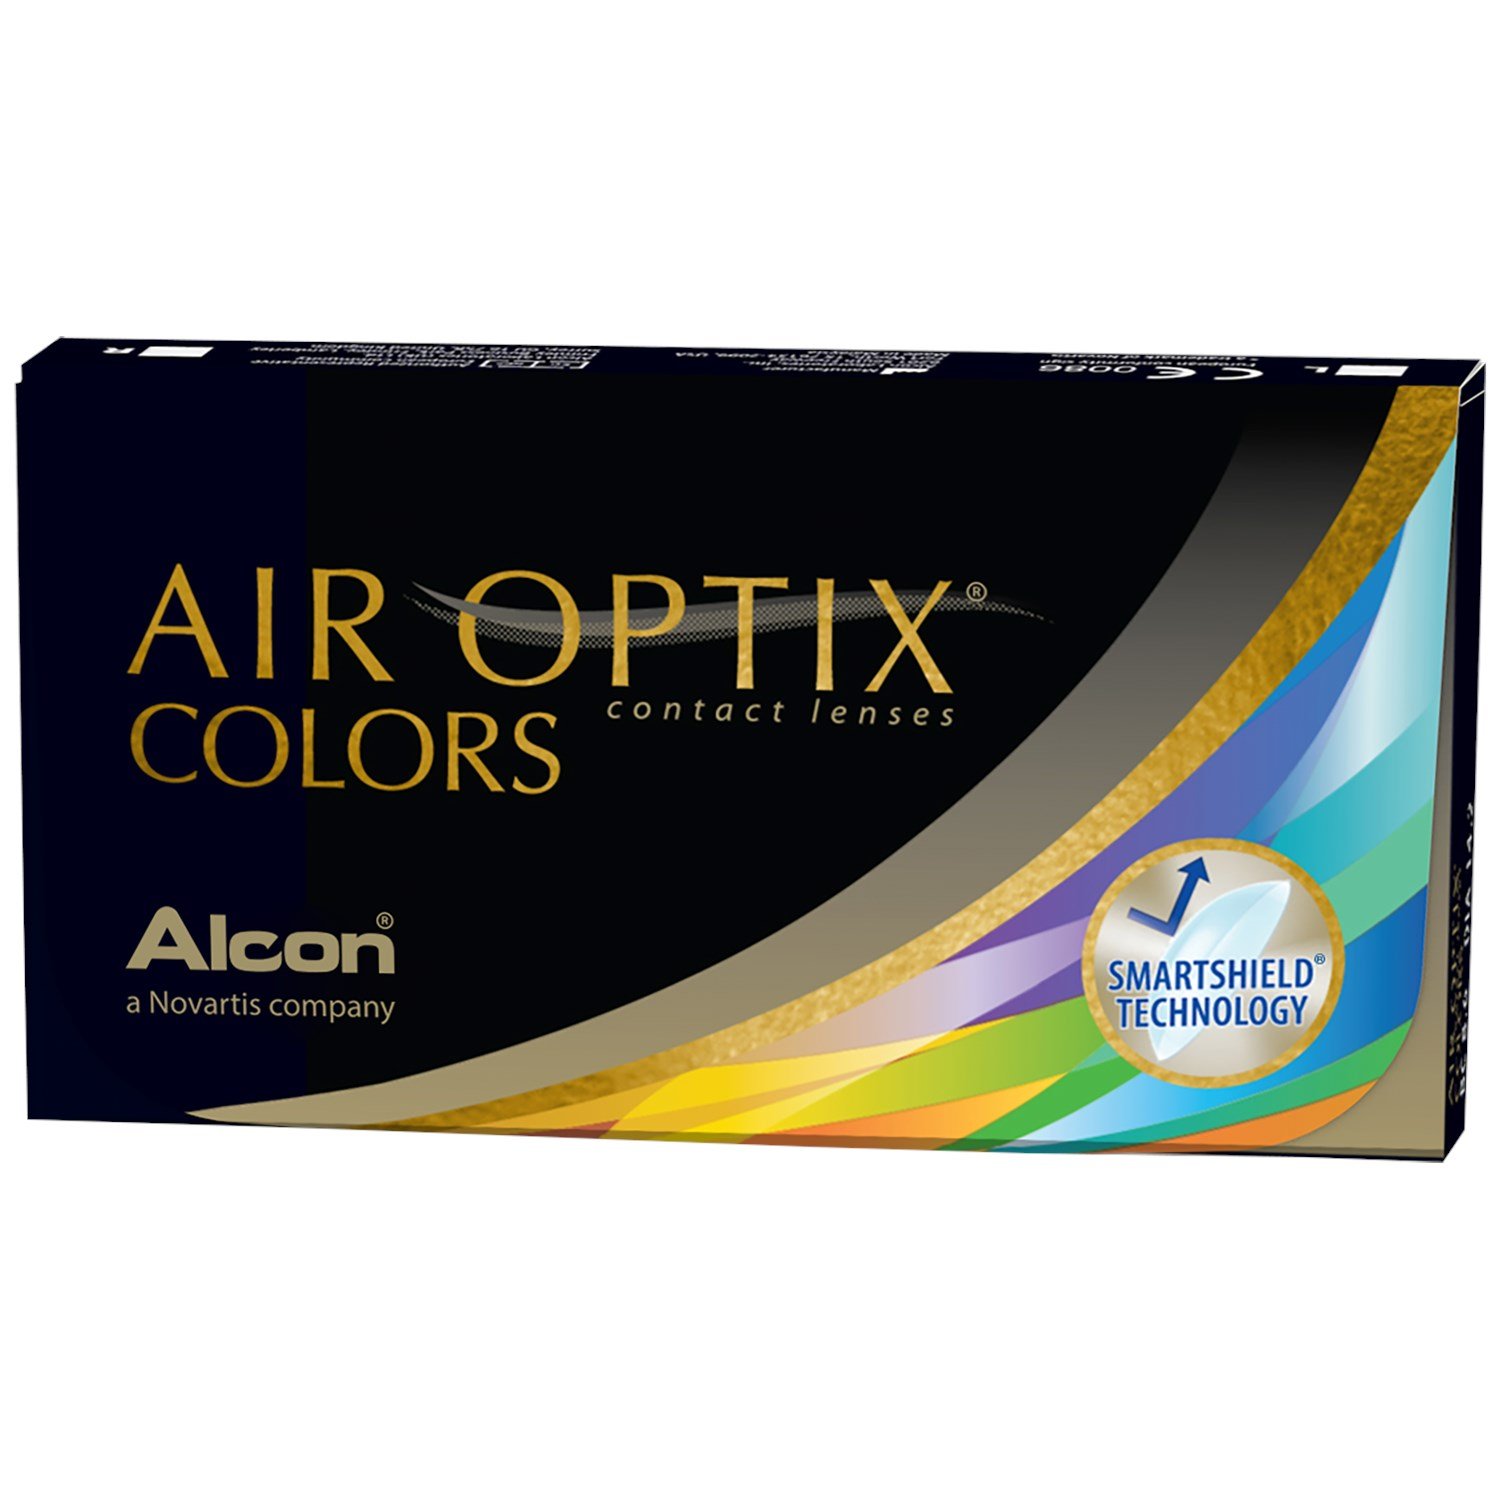 AIR OPTIX COLORS contact lenses